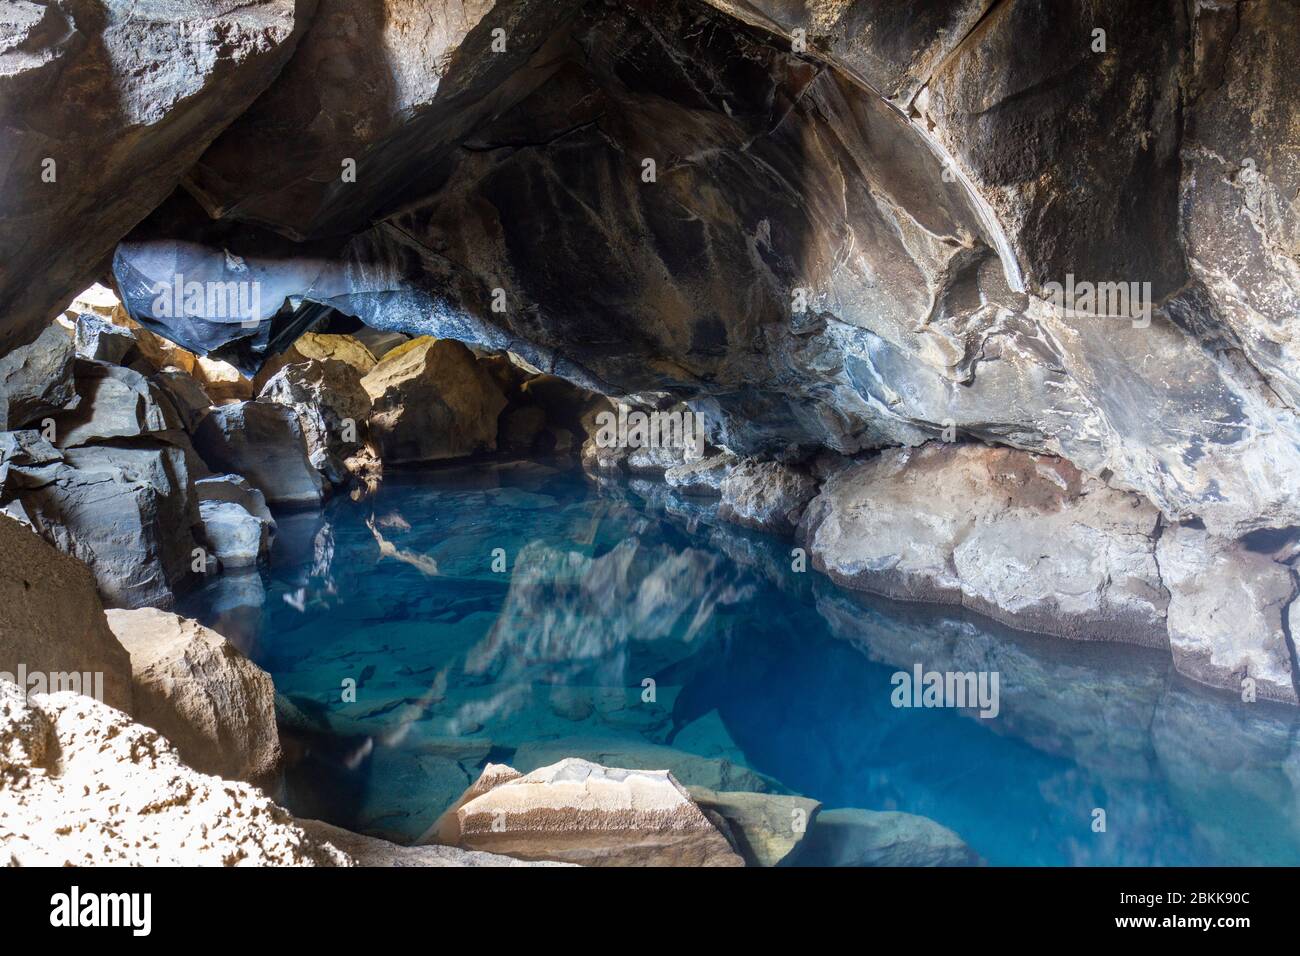 La grotte de Grjótagjá, une grotte de lave avec une source thermale magnifiquement claire (présentée dans 'Game of Thrones'), Myvatn, Islande. Banque D'Images